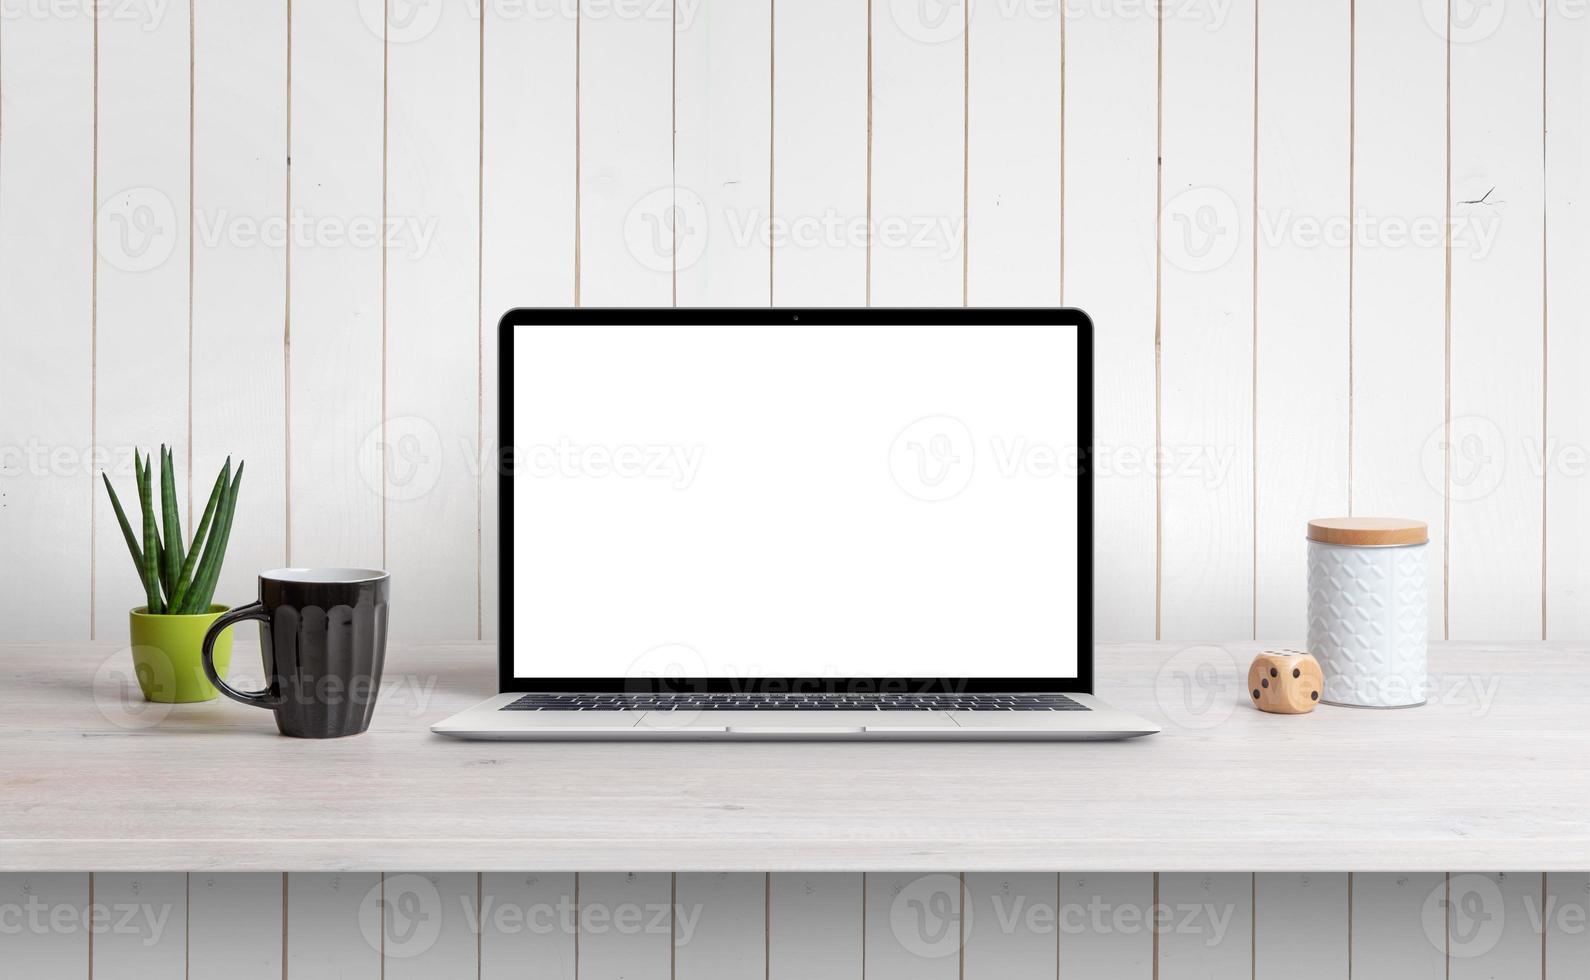 lapop sulla scrivania con schermo bianco isolato per la promozione del design di mockup, app o pagine web. parete di legno bianca sullo sfondo foto